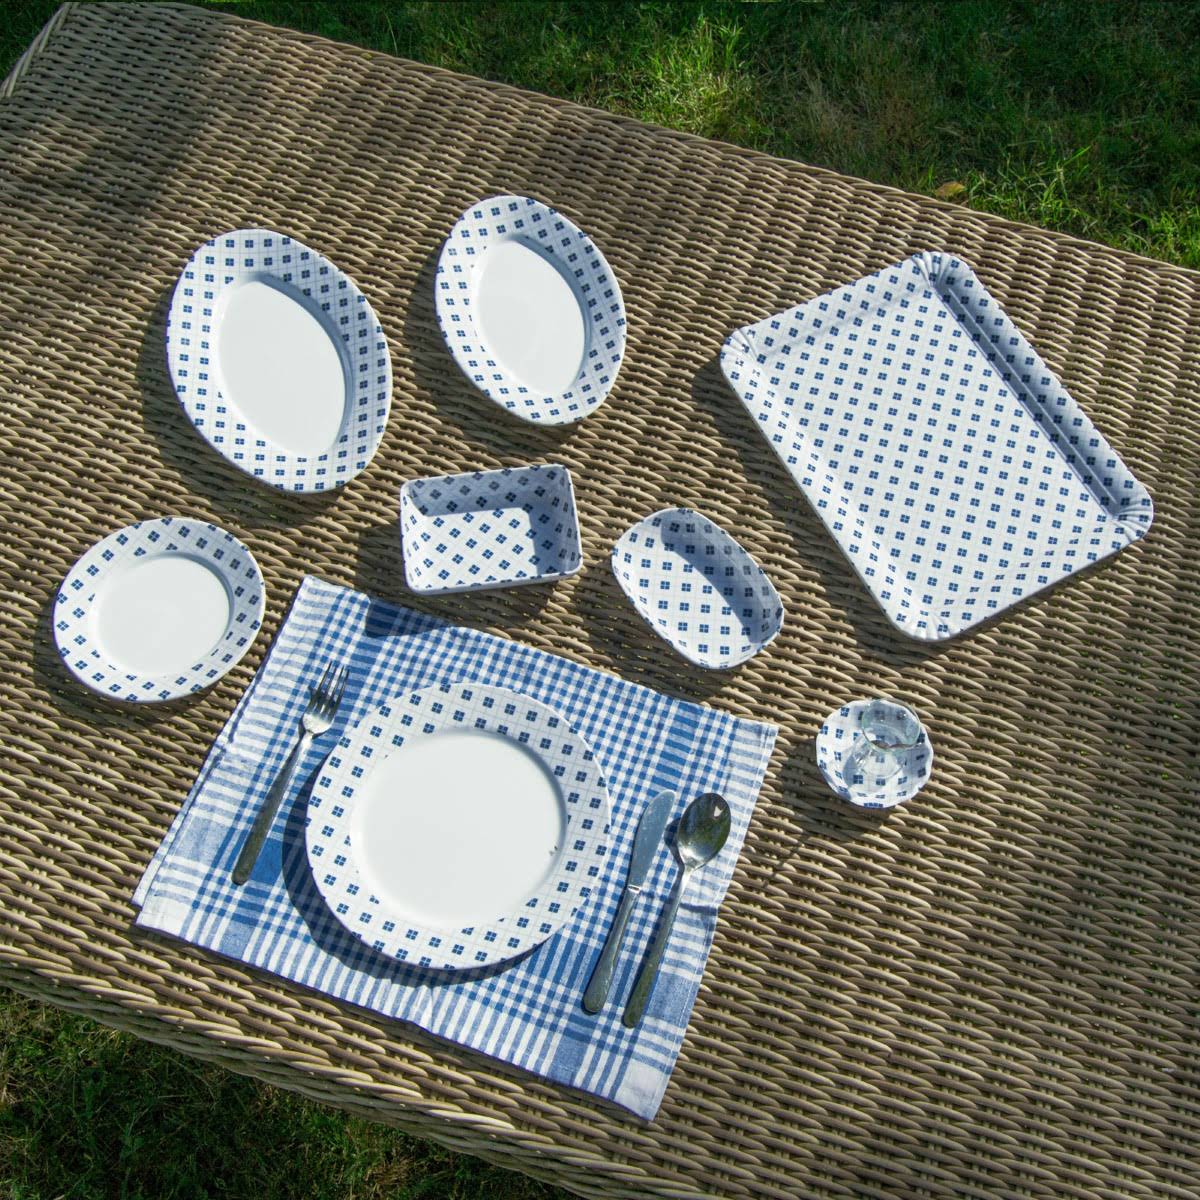 4 kişilik 18 parça melamin piknik seti kolay taşınır kolay temizlenir ve kullanılır